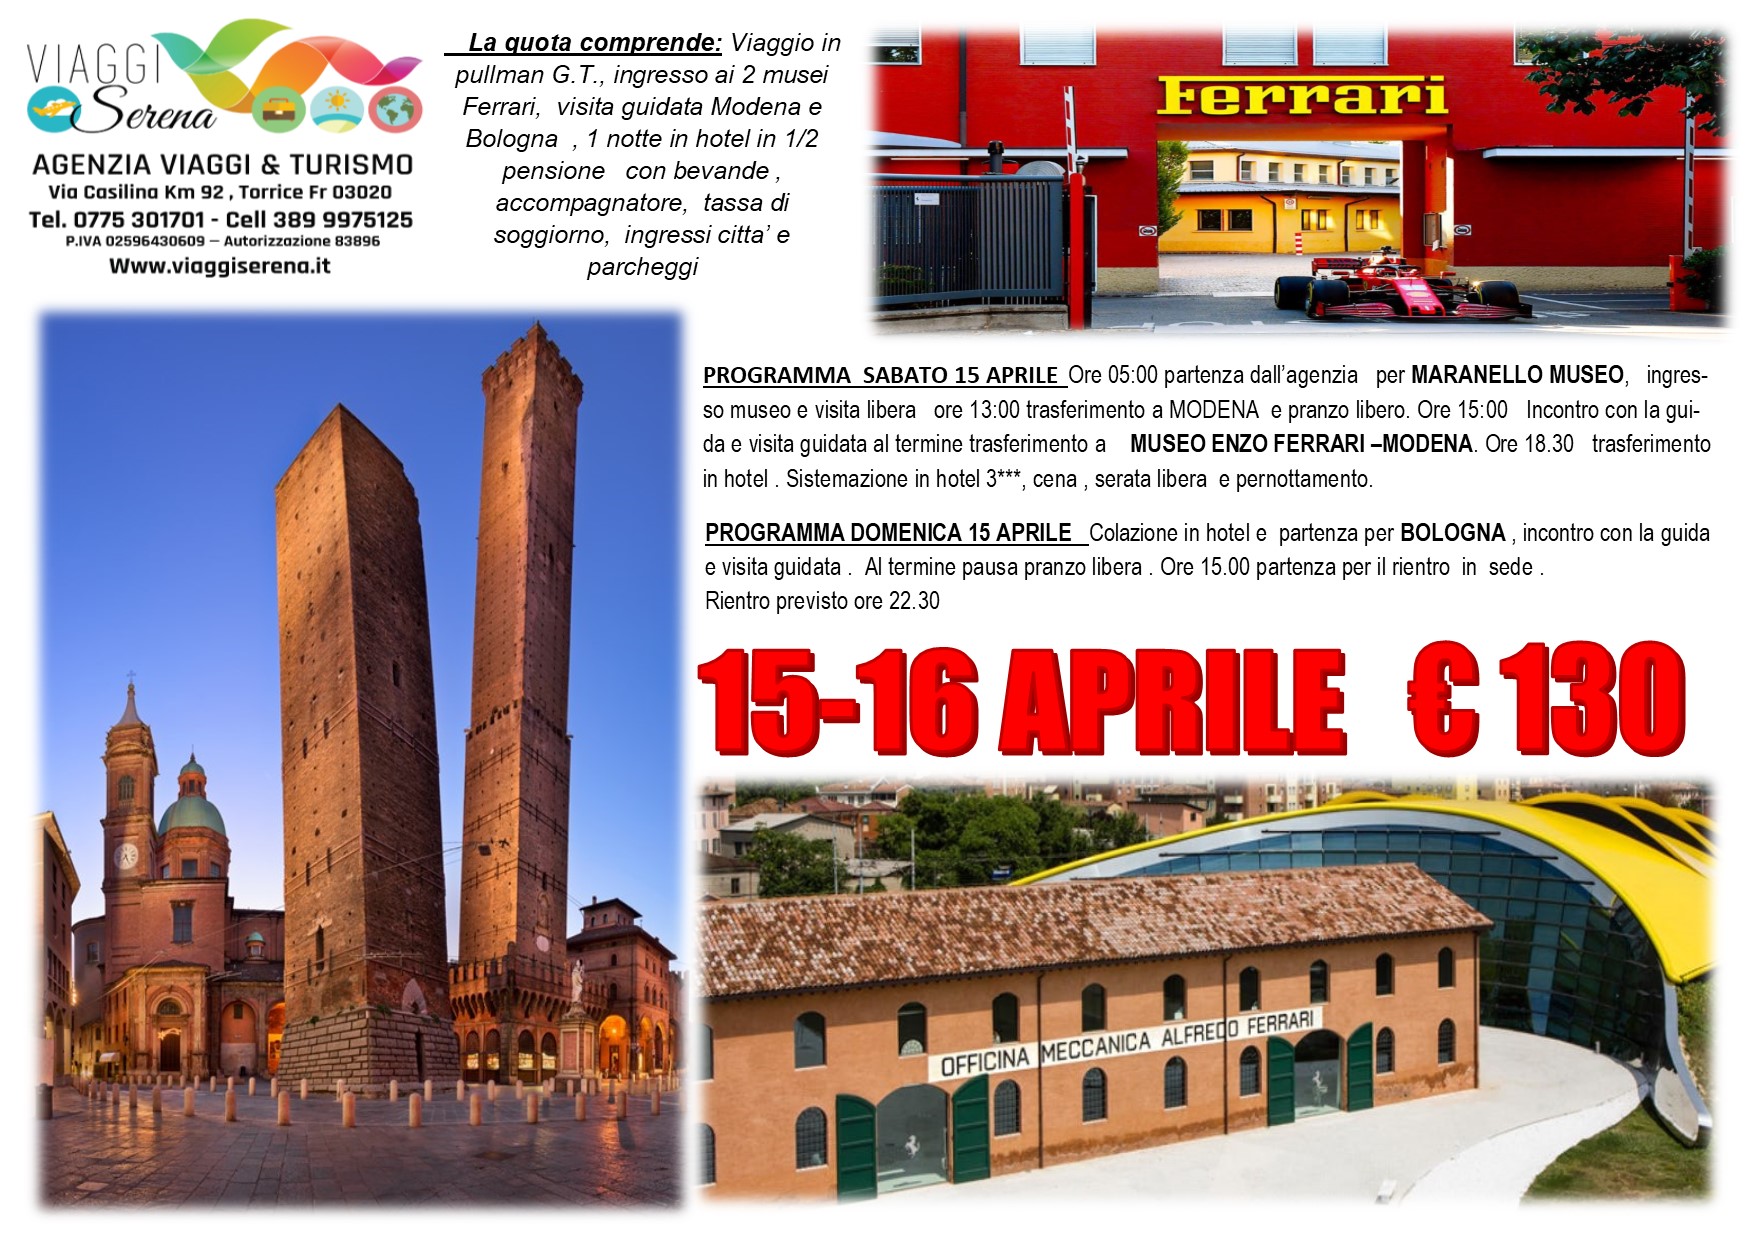 Viaggi di Gruppo: Museo Ferrari, Maranello, Modena & Bologna 15-16 Aprile €130,00